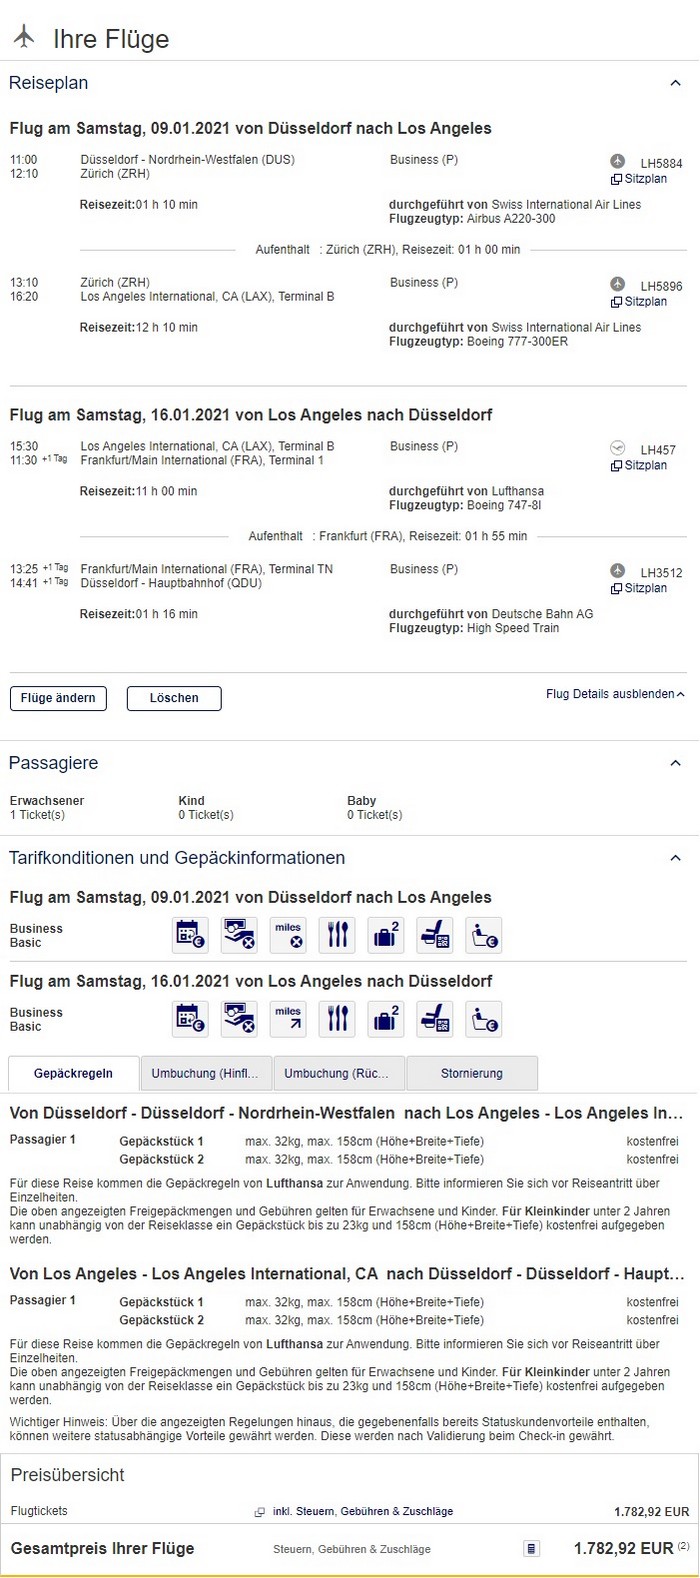 Preisbeispiel von Düsseldorf nach Los Angeles in der Lufthansa Business-Class